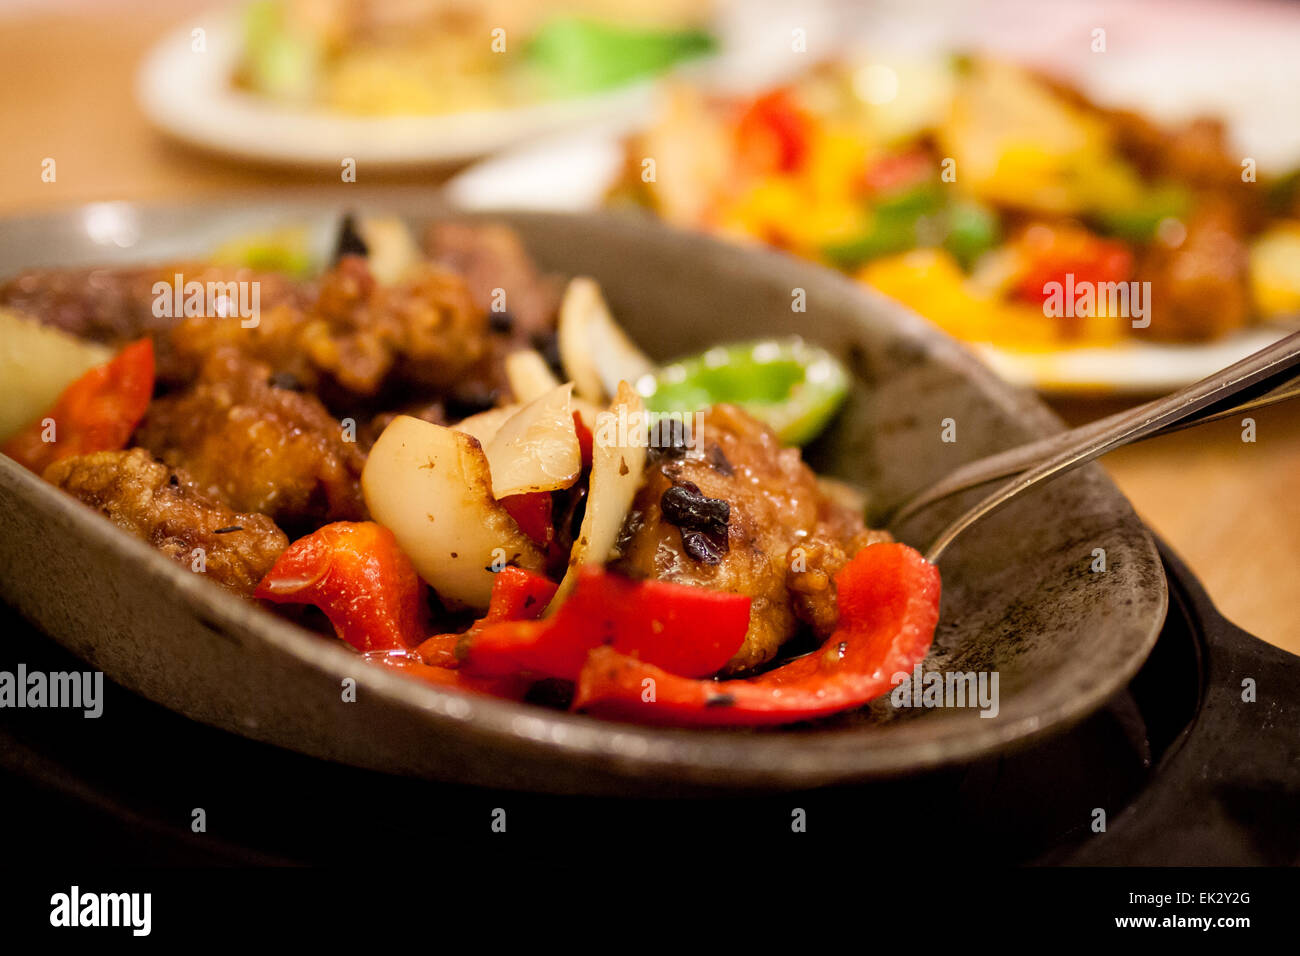 La cuisine chinoise : faire revenir le poulet et les légumes dans une sauce aux haricots noirs, servis sur une plaque en fonte, à chaud. Banque D'Images